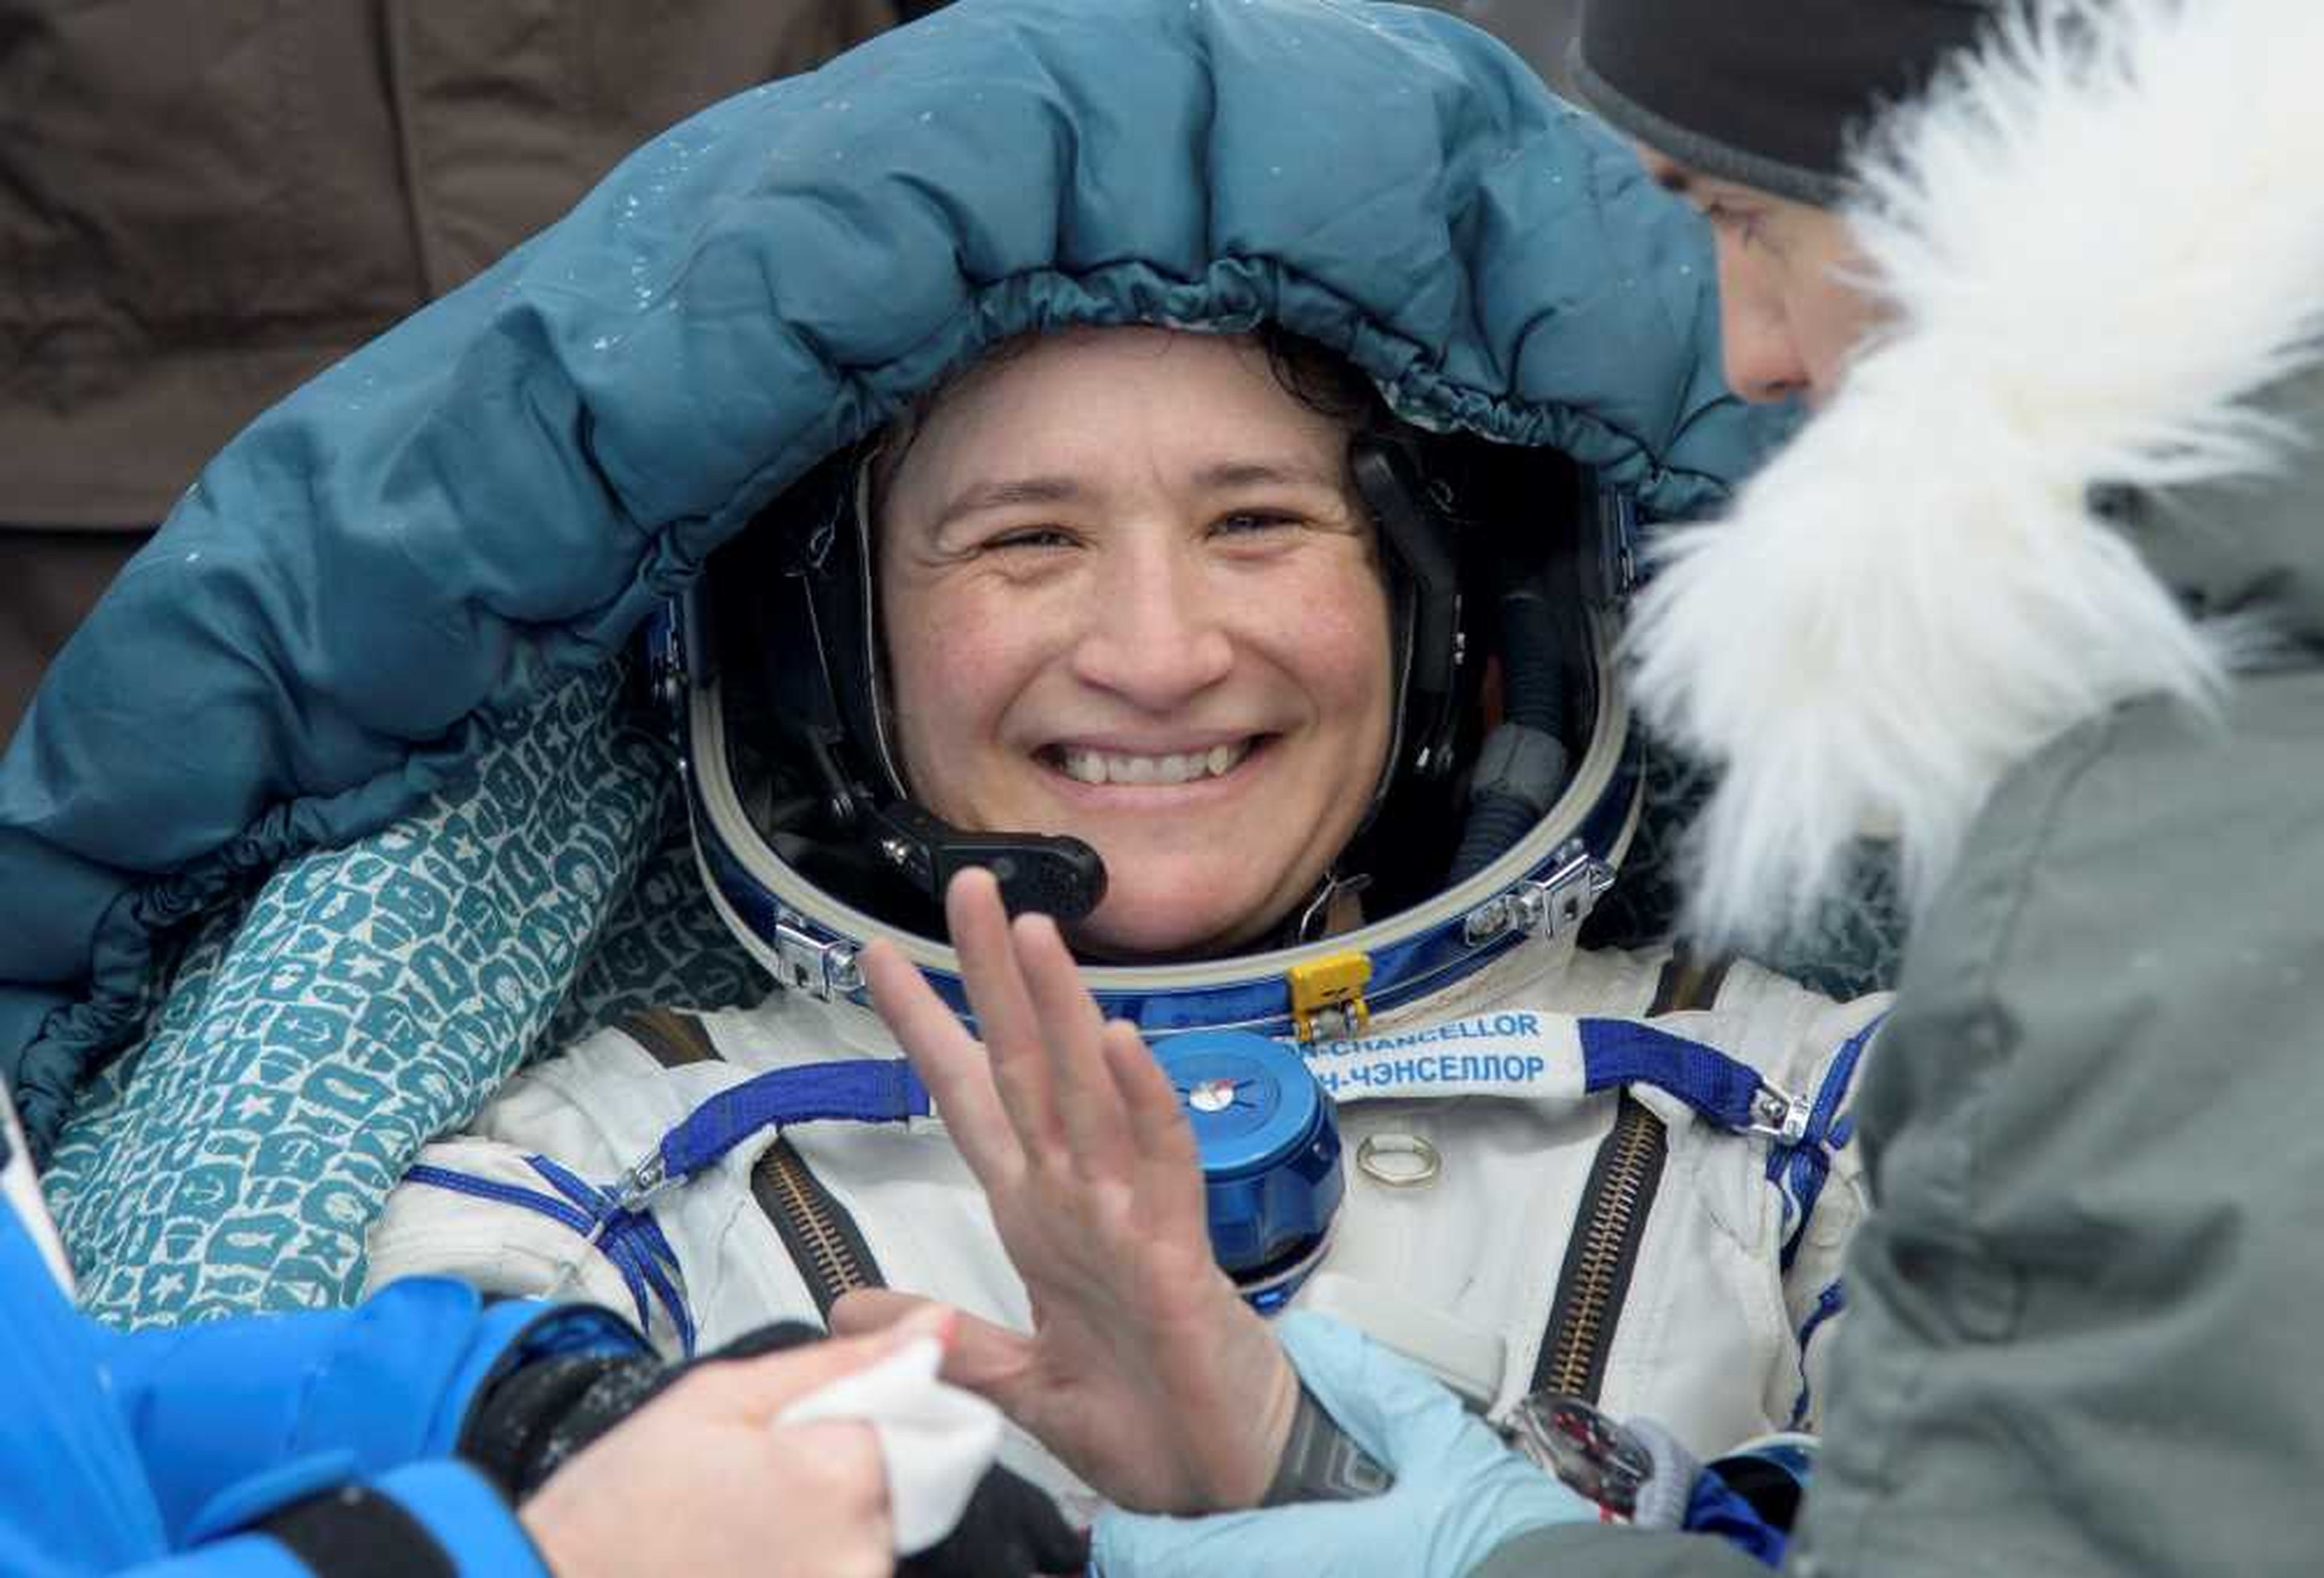 La astronauta de la NASA, Serena Auñón-Chancellor, es atendida nada más regresar de un viaje de 197 días en el espacio.